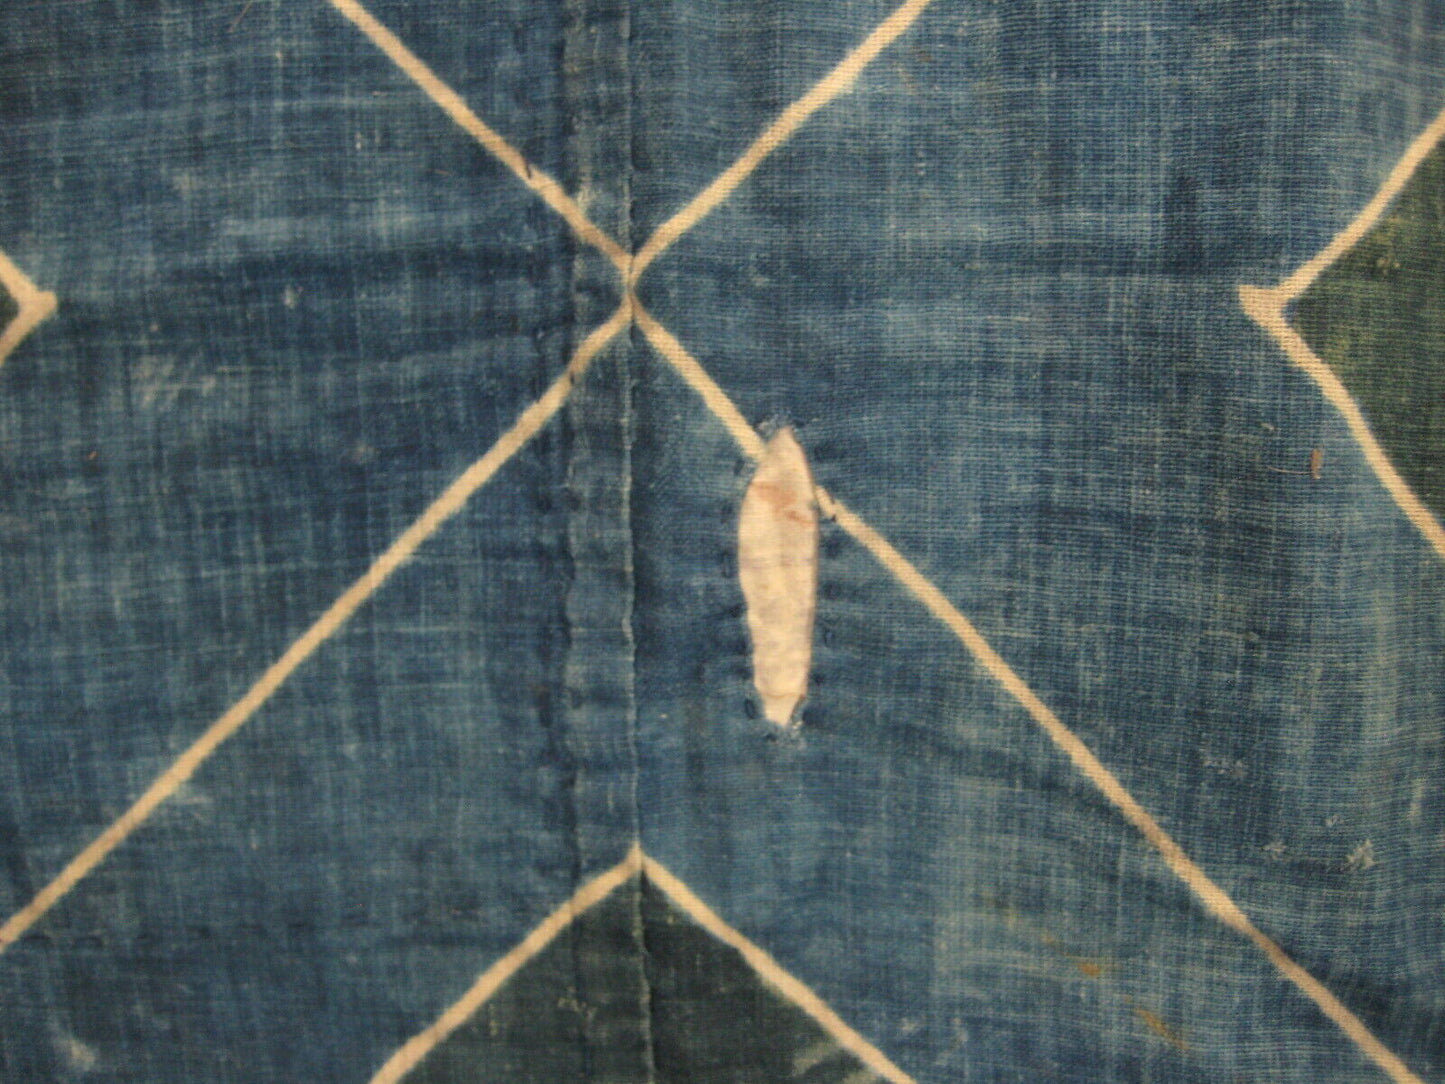 Antique Japanese C. 1800 Signed Boro Indigo Dyed Tsutsugaki Hand Woven Cotton